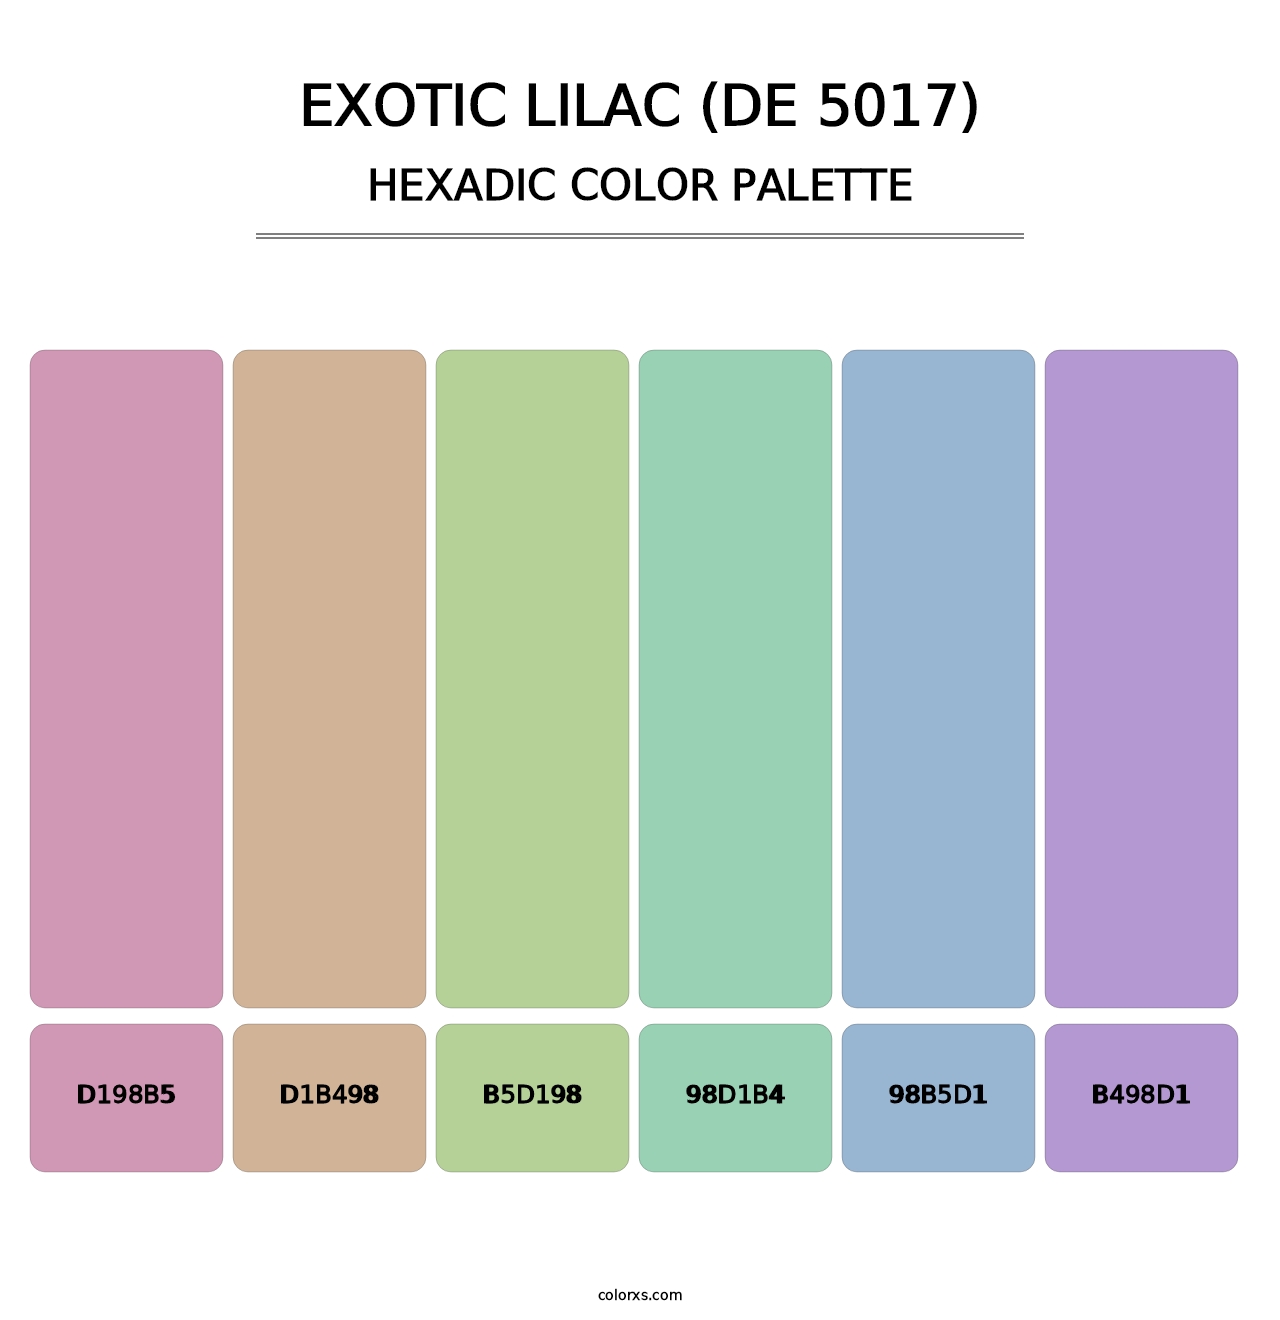 Exotic Lilac (DE 5017) - Hexadic Color Palette